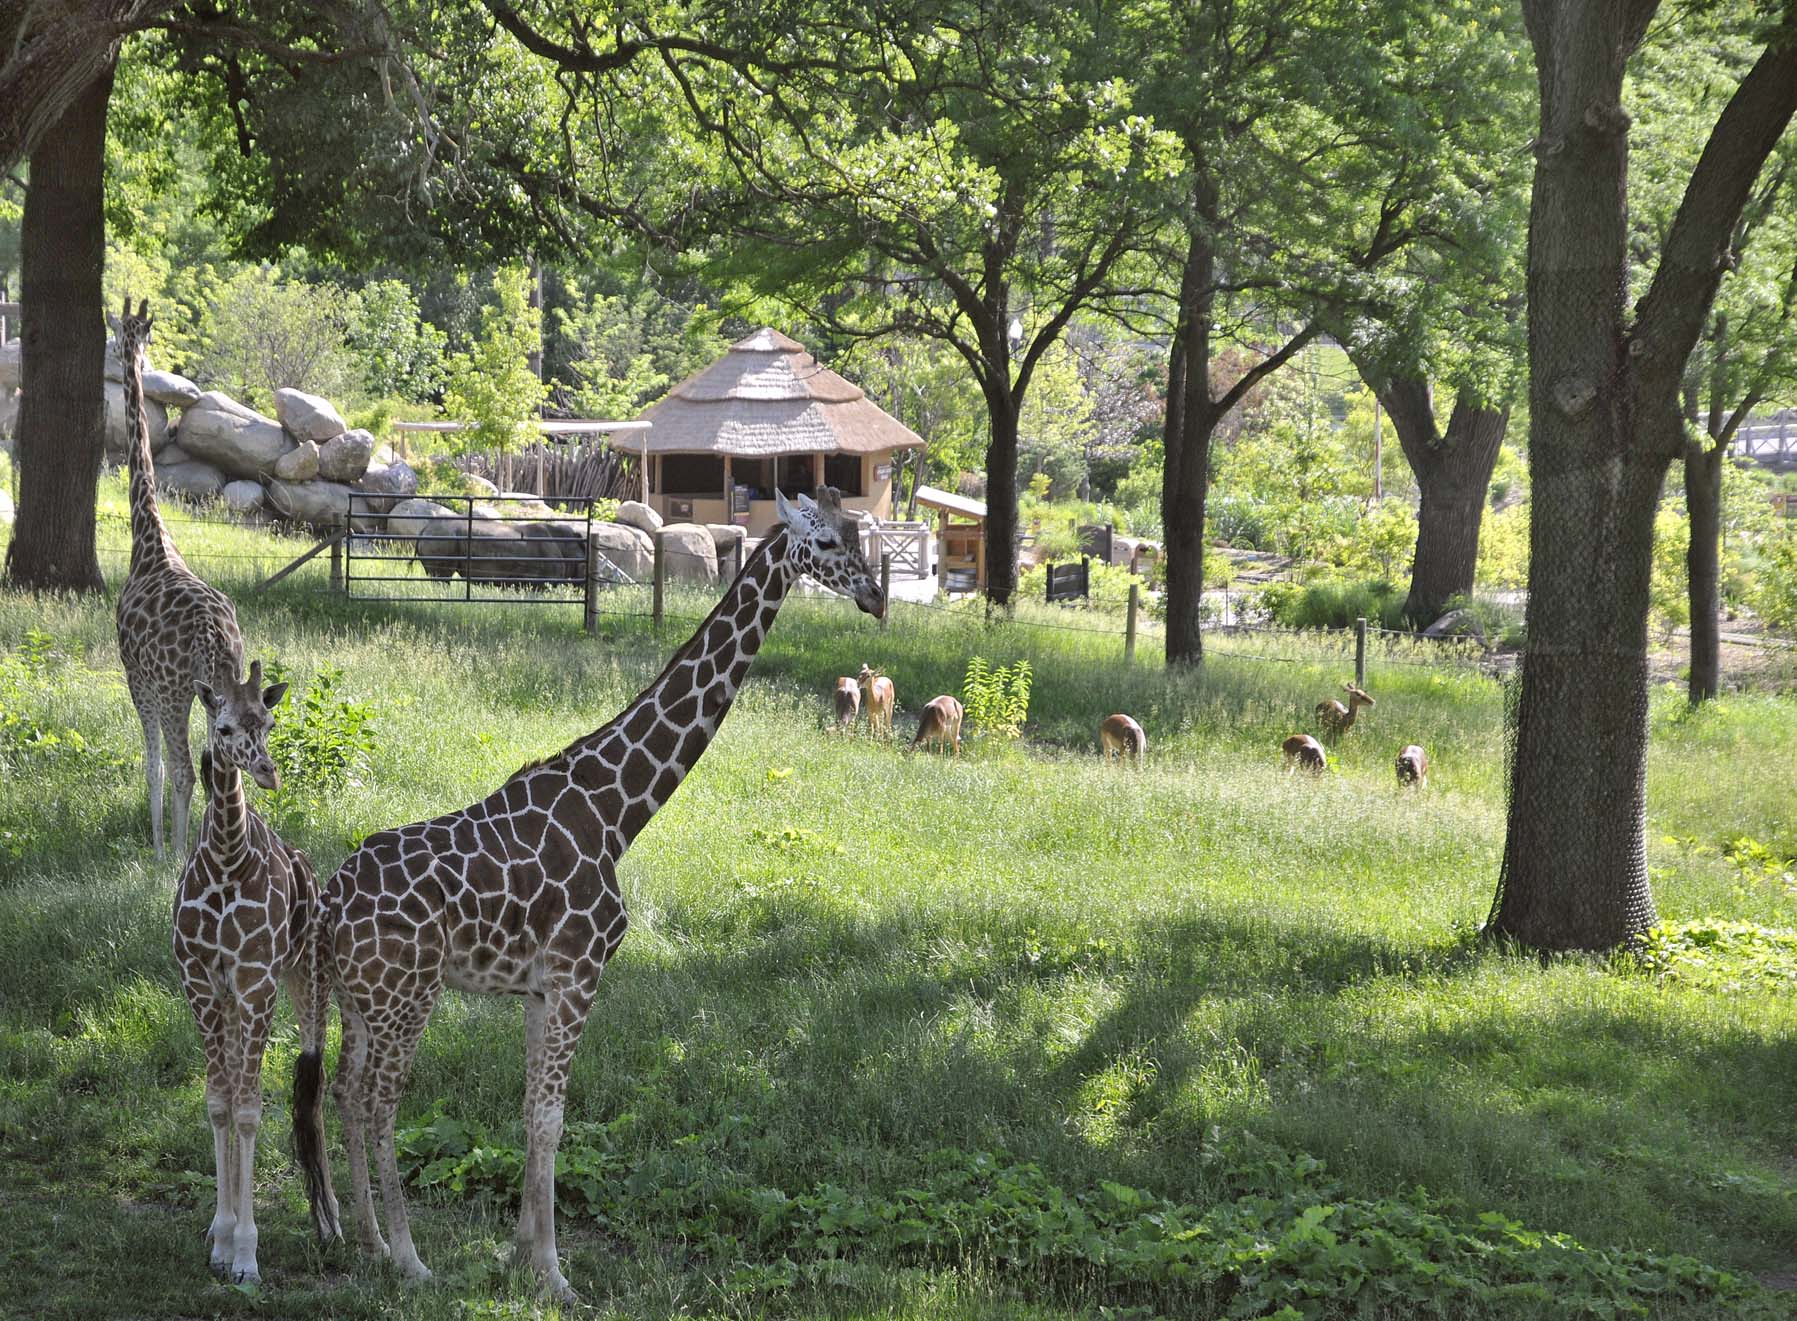 Giraffes in Habitat